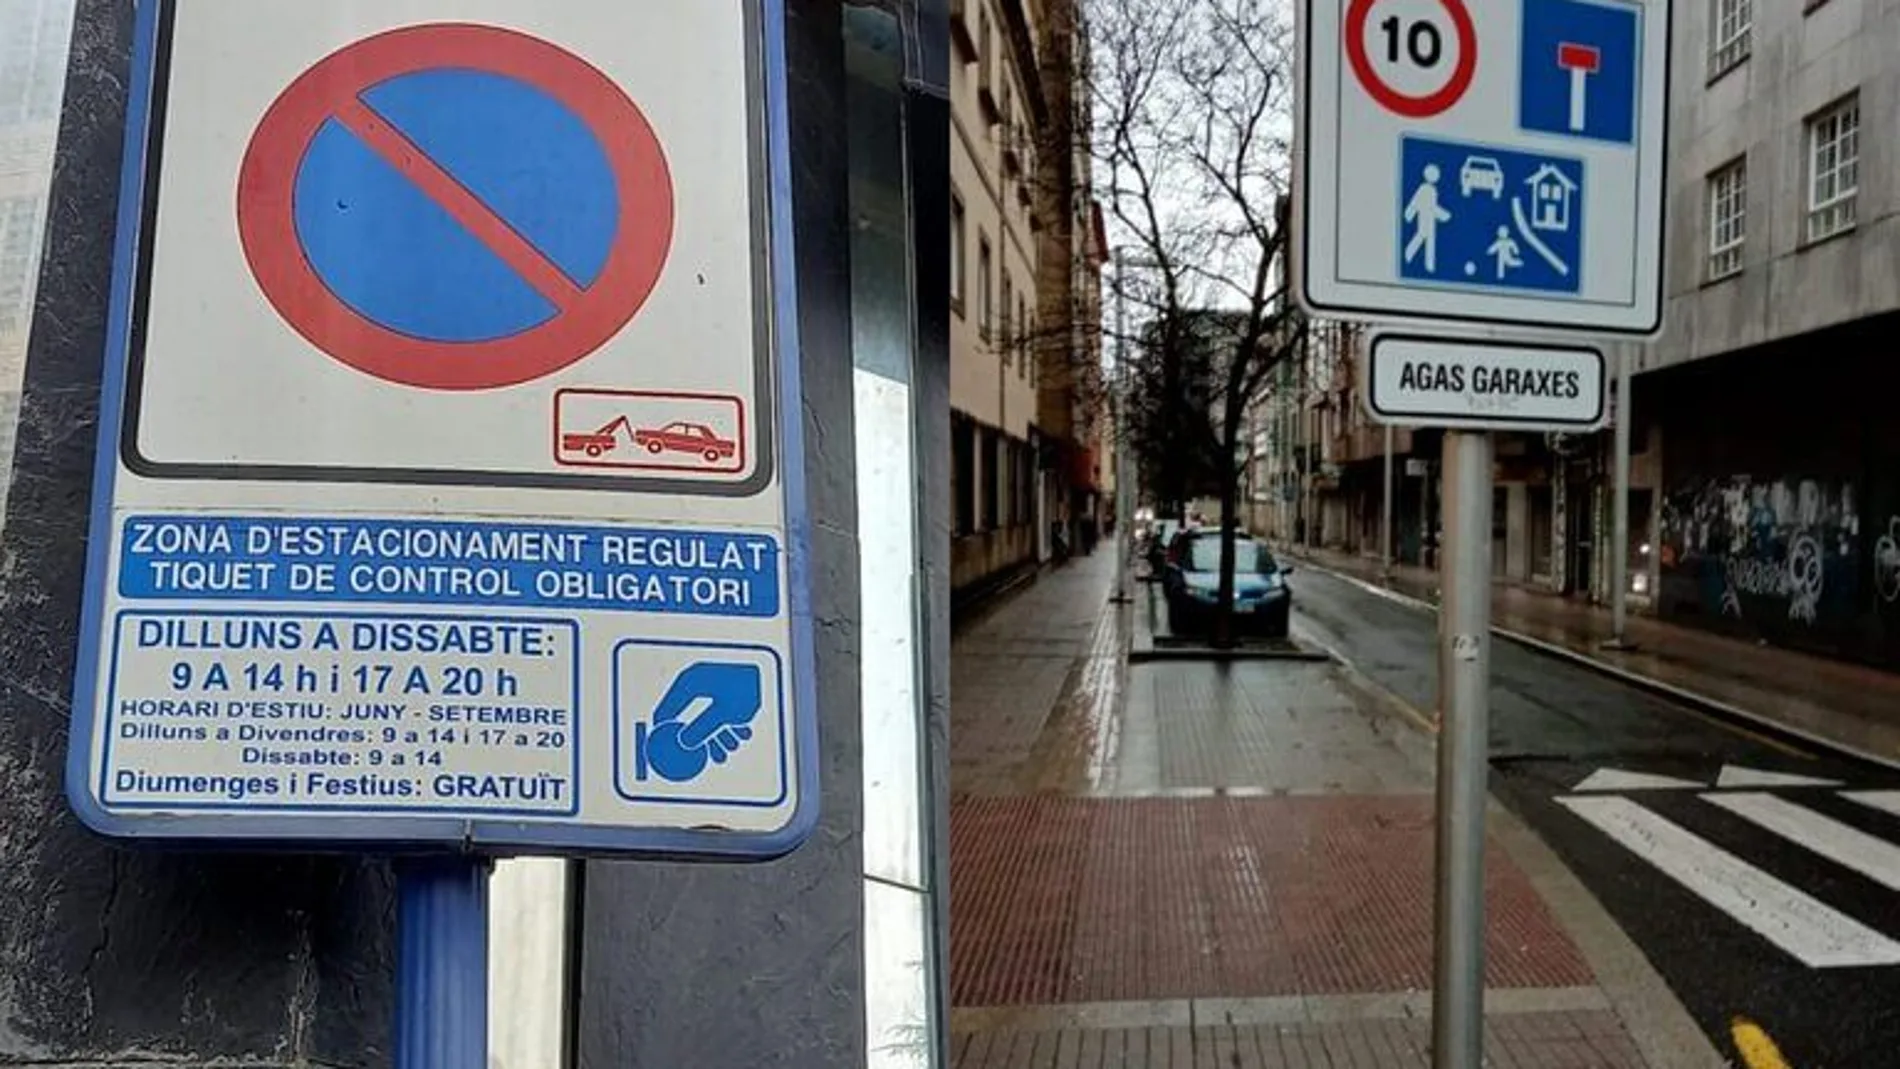 Señales de tráfico monolingües en Cataluña y Galicia